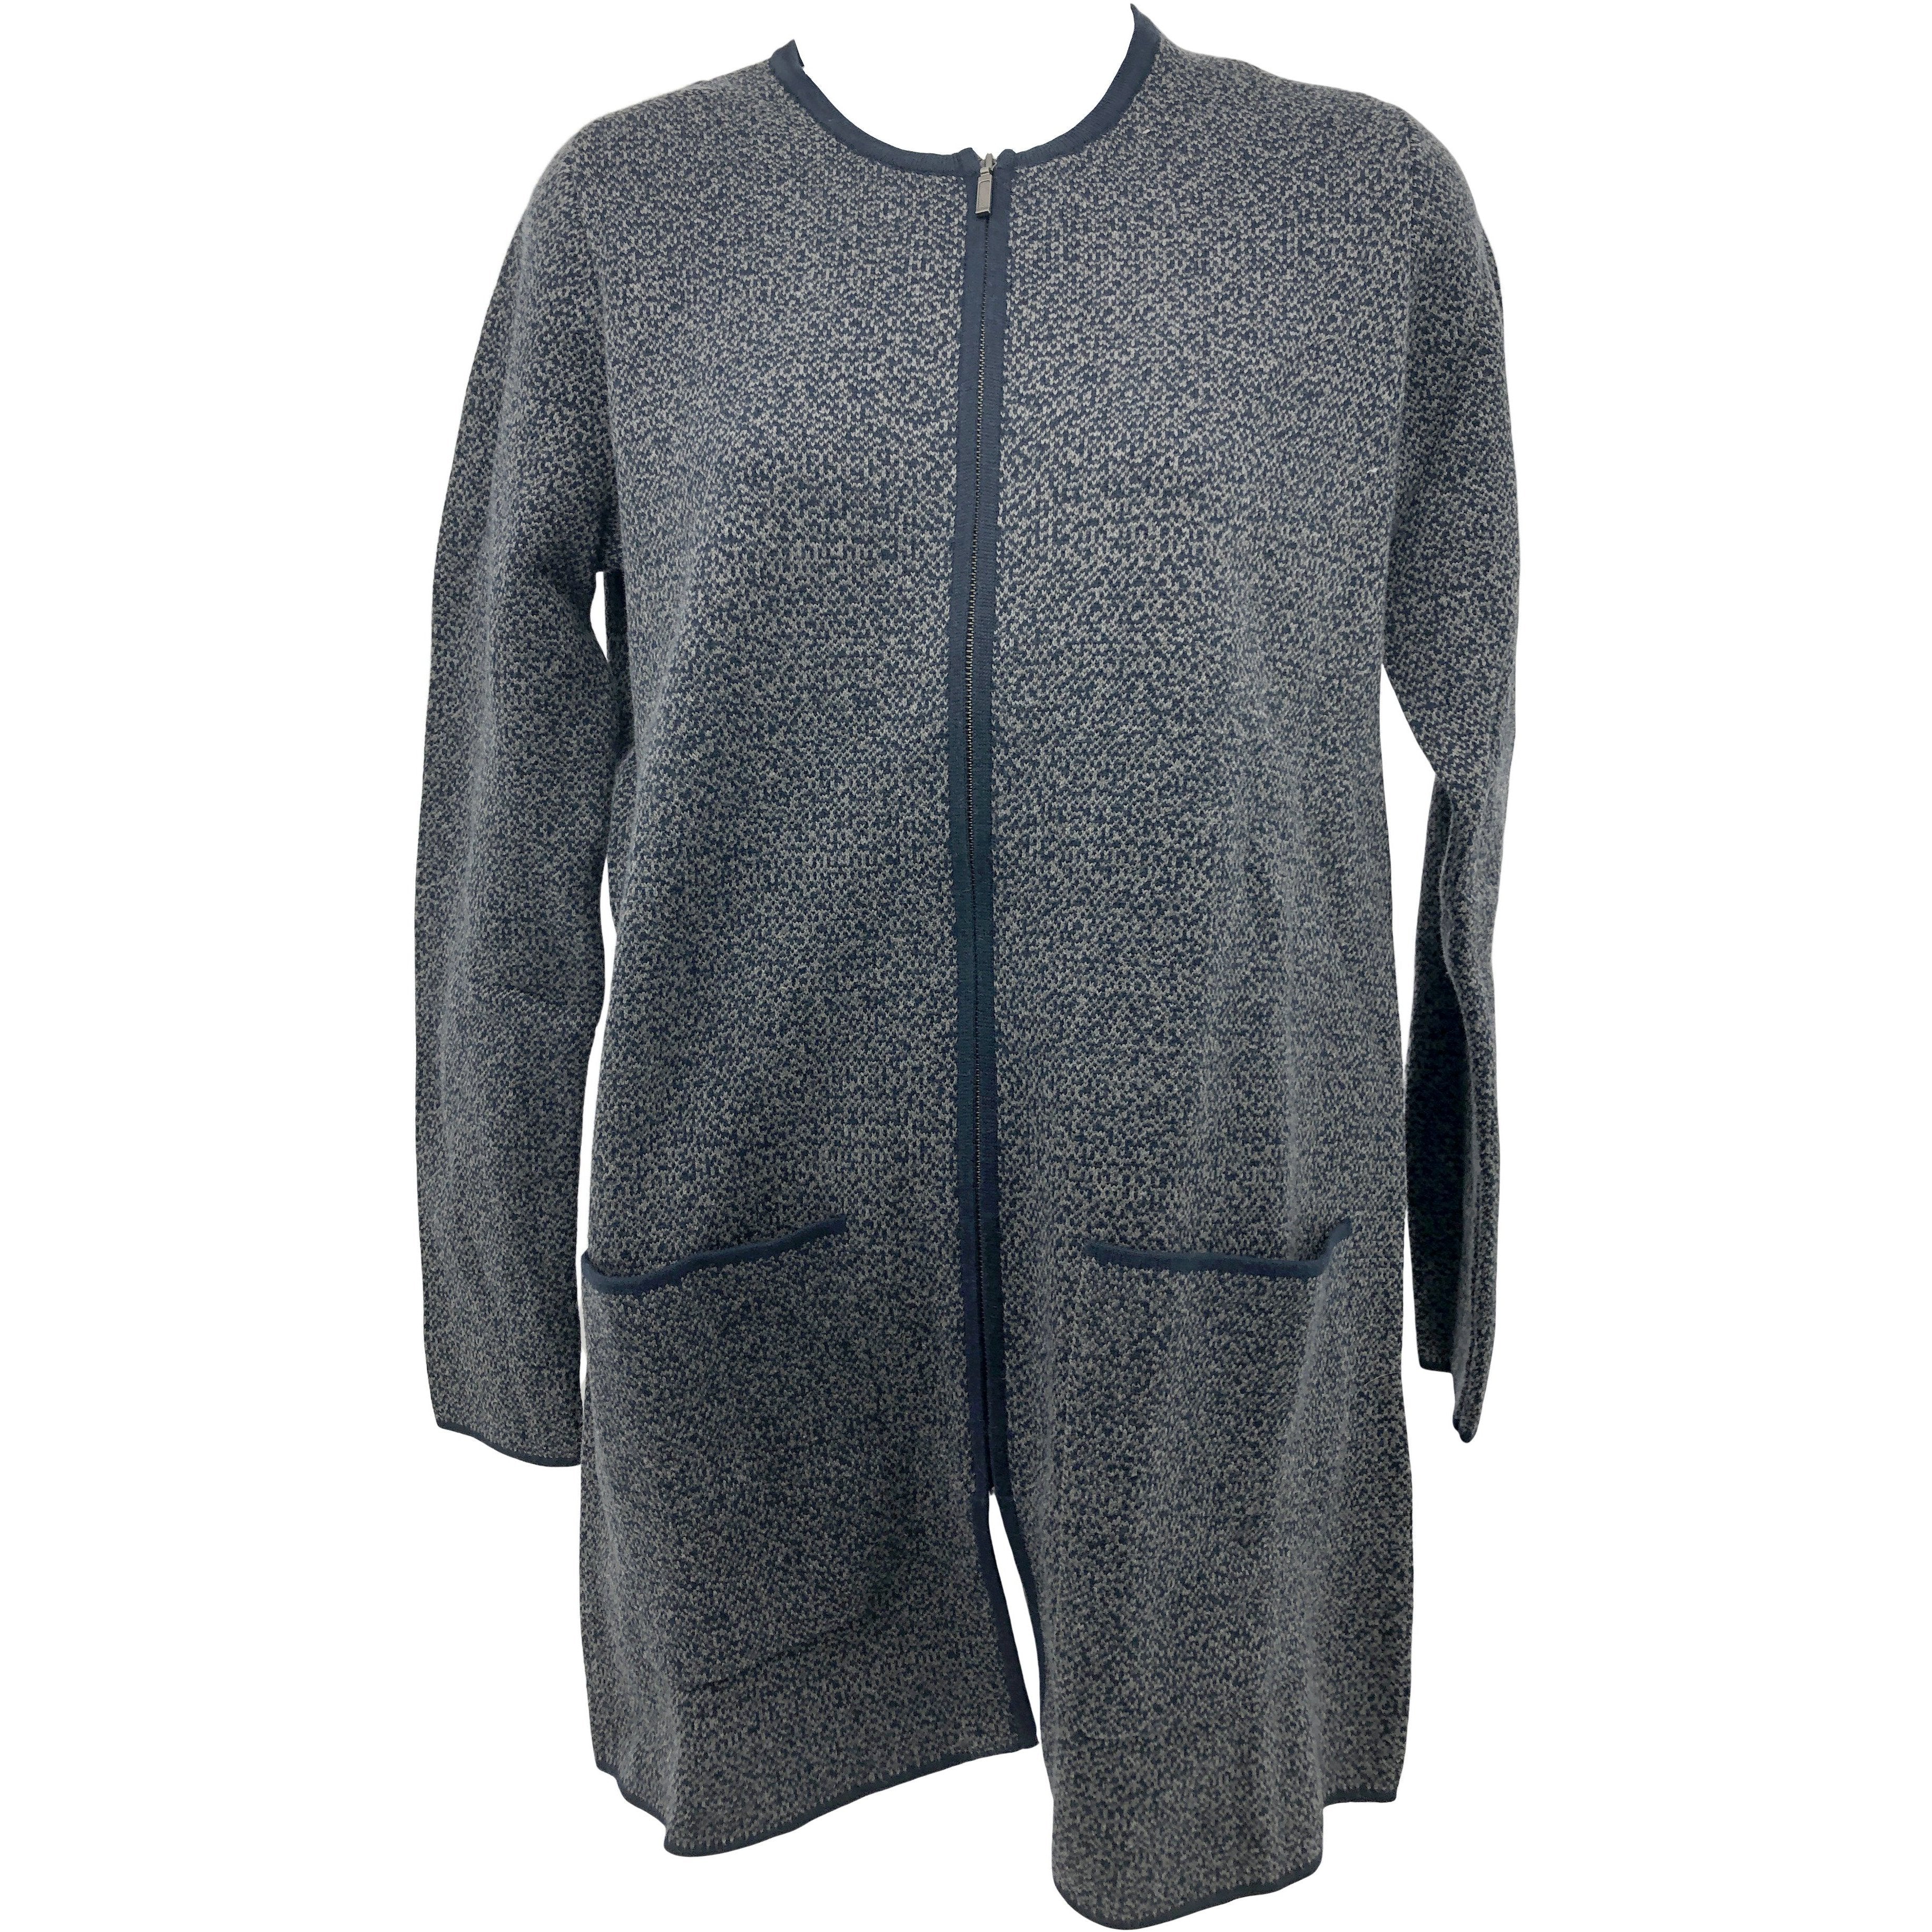 Nicole Miller Women's Zip Up Sweater / Grey & Blue / Various Sizes